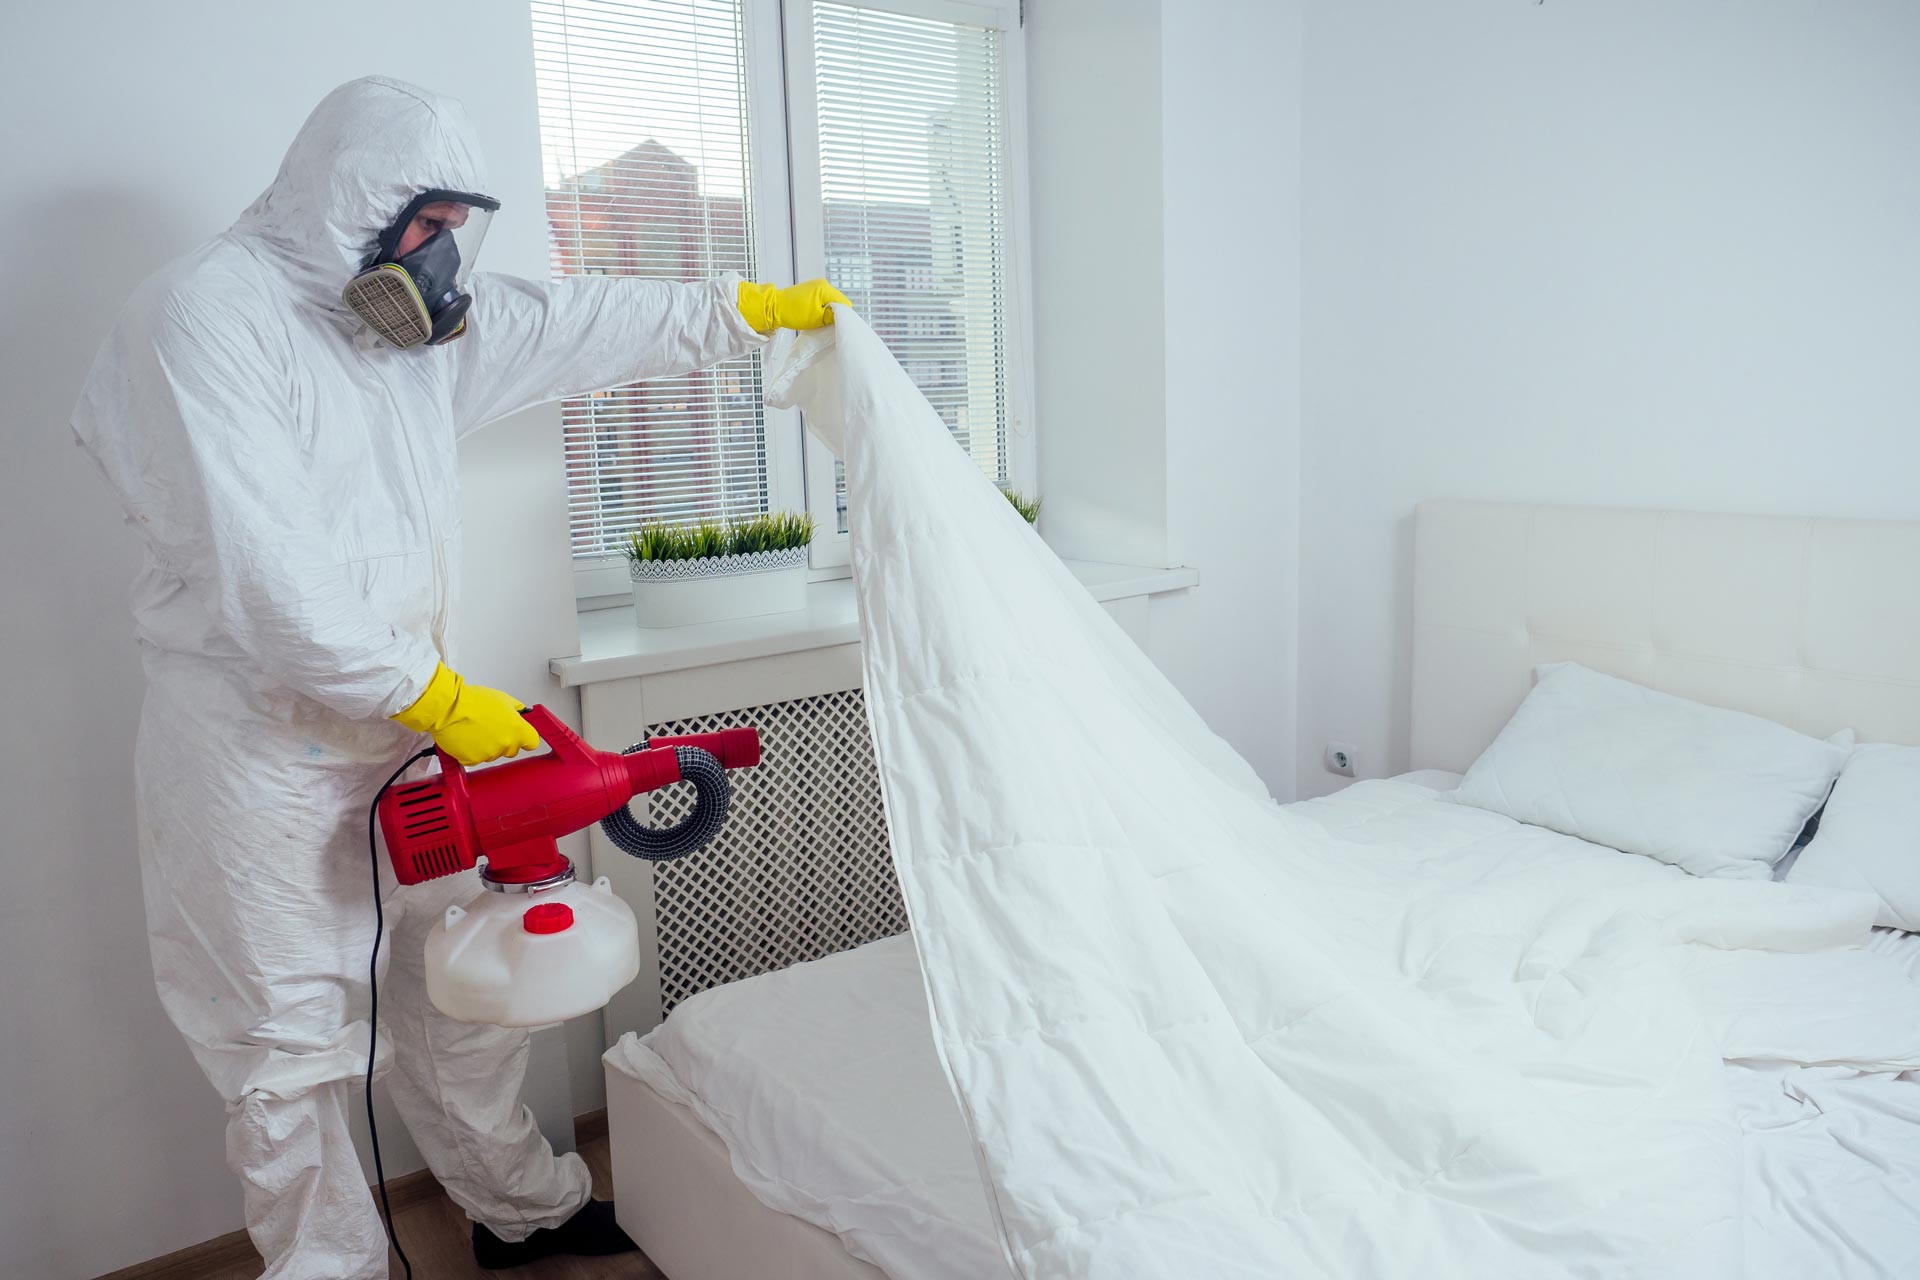 Une extermination de punaises de lit par fumigation dans une chambre